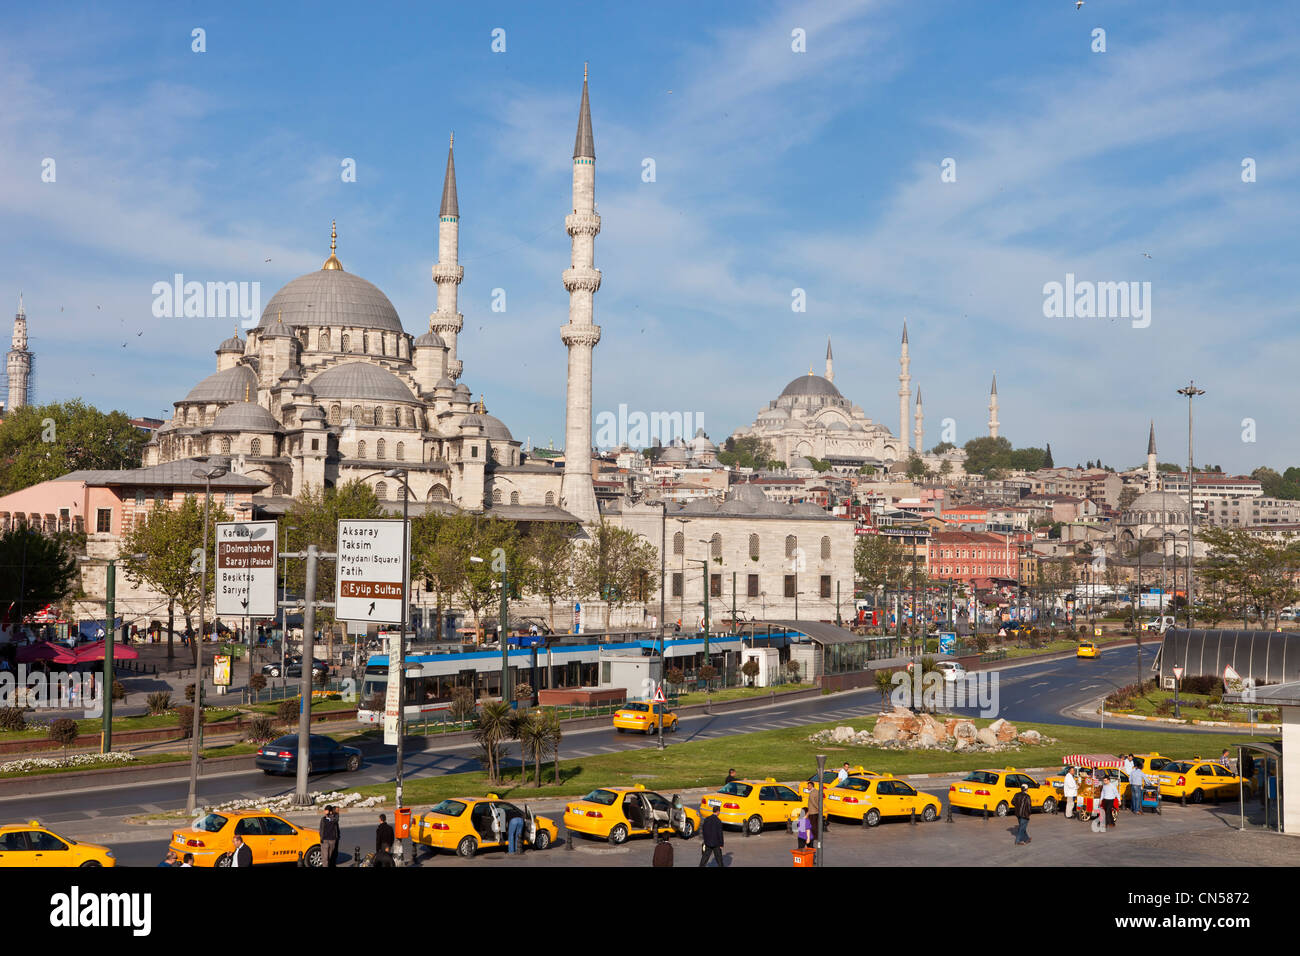 Turchia, Istanbul, centro storico elencati come patrimonio mondiale dall' UNESCO, Eminönü district, taxi e Yeni Cami (Nuova Moschea) Foto Stock